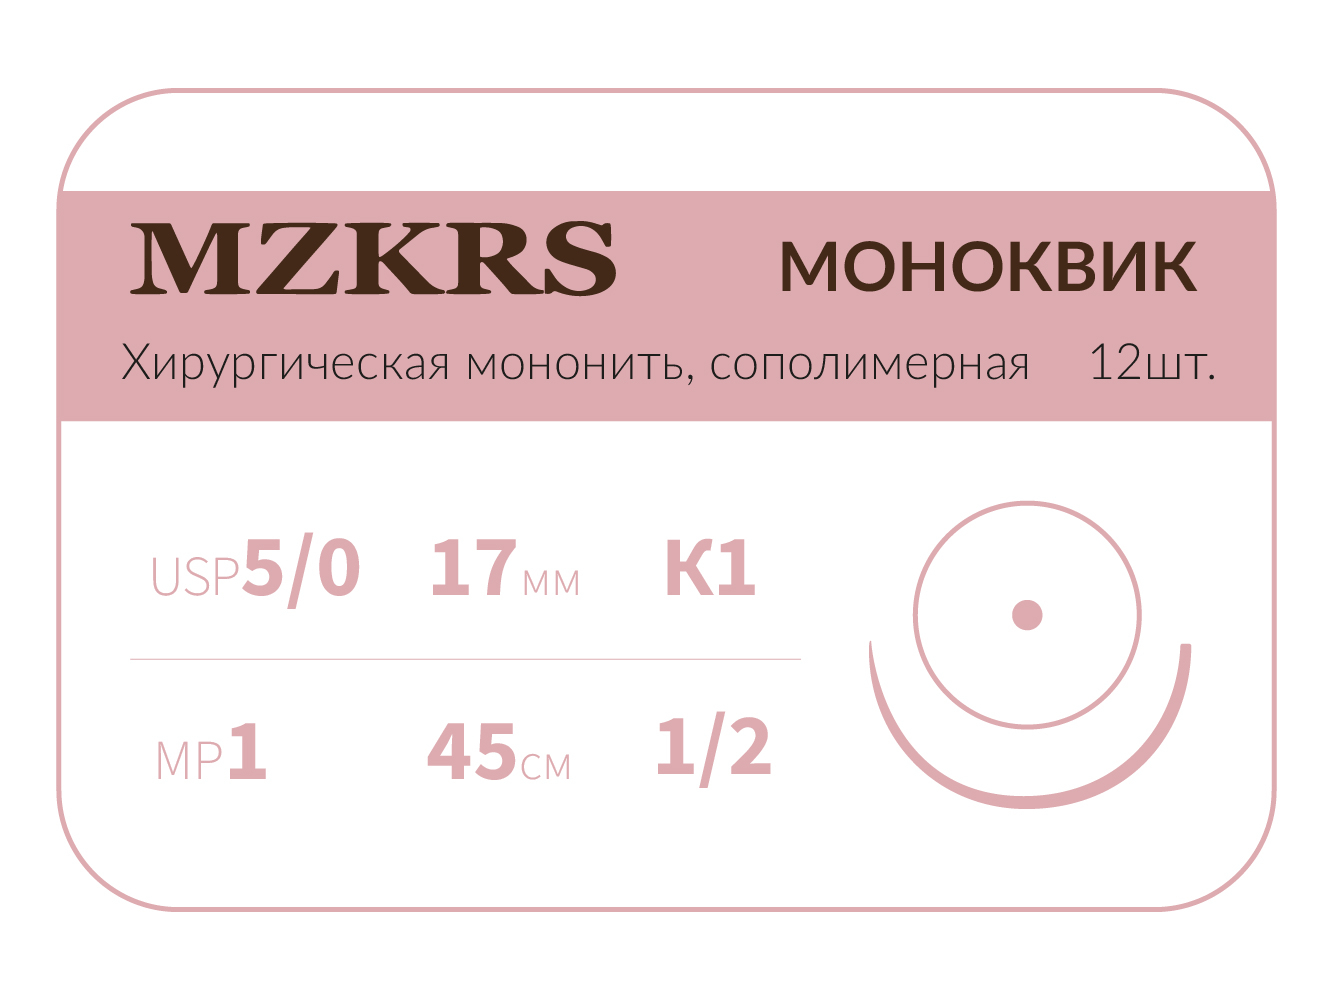 1712К1 Premium-5/0 (1)45  МОНК МОНОКВИК хирургическая мононить, сополимерная, колющая игла, MZKRS (Россия)